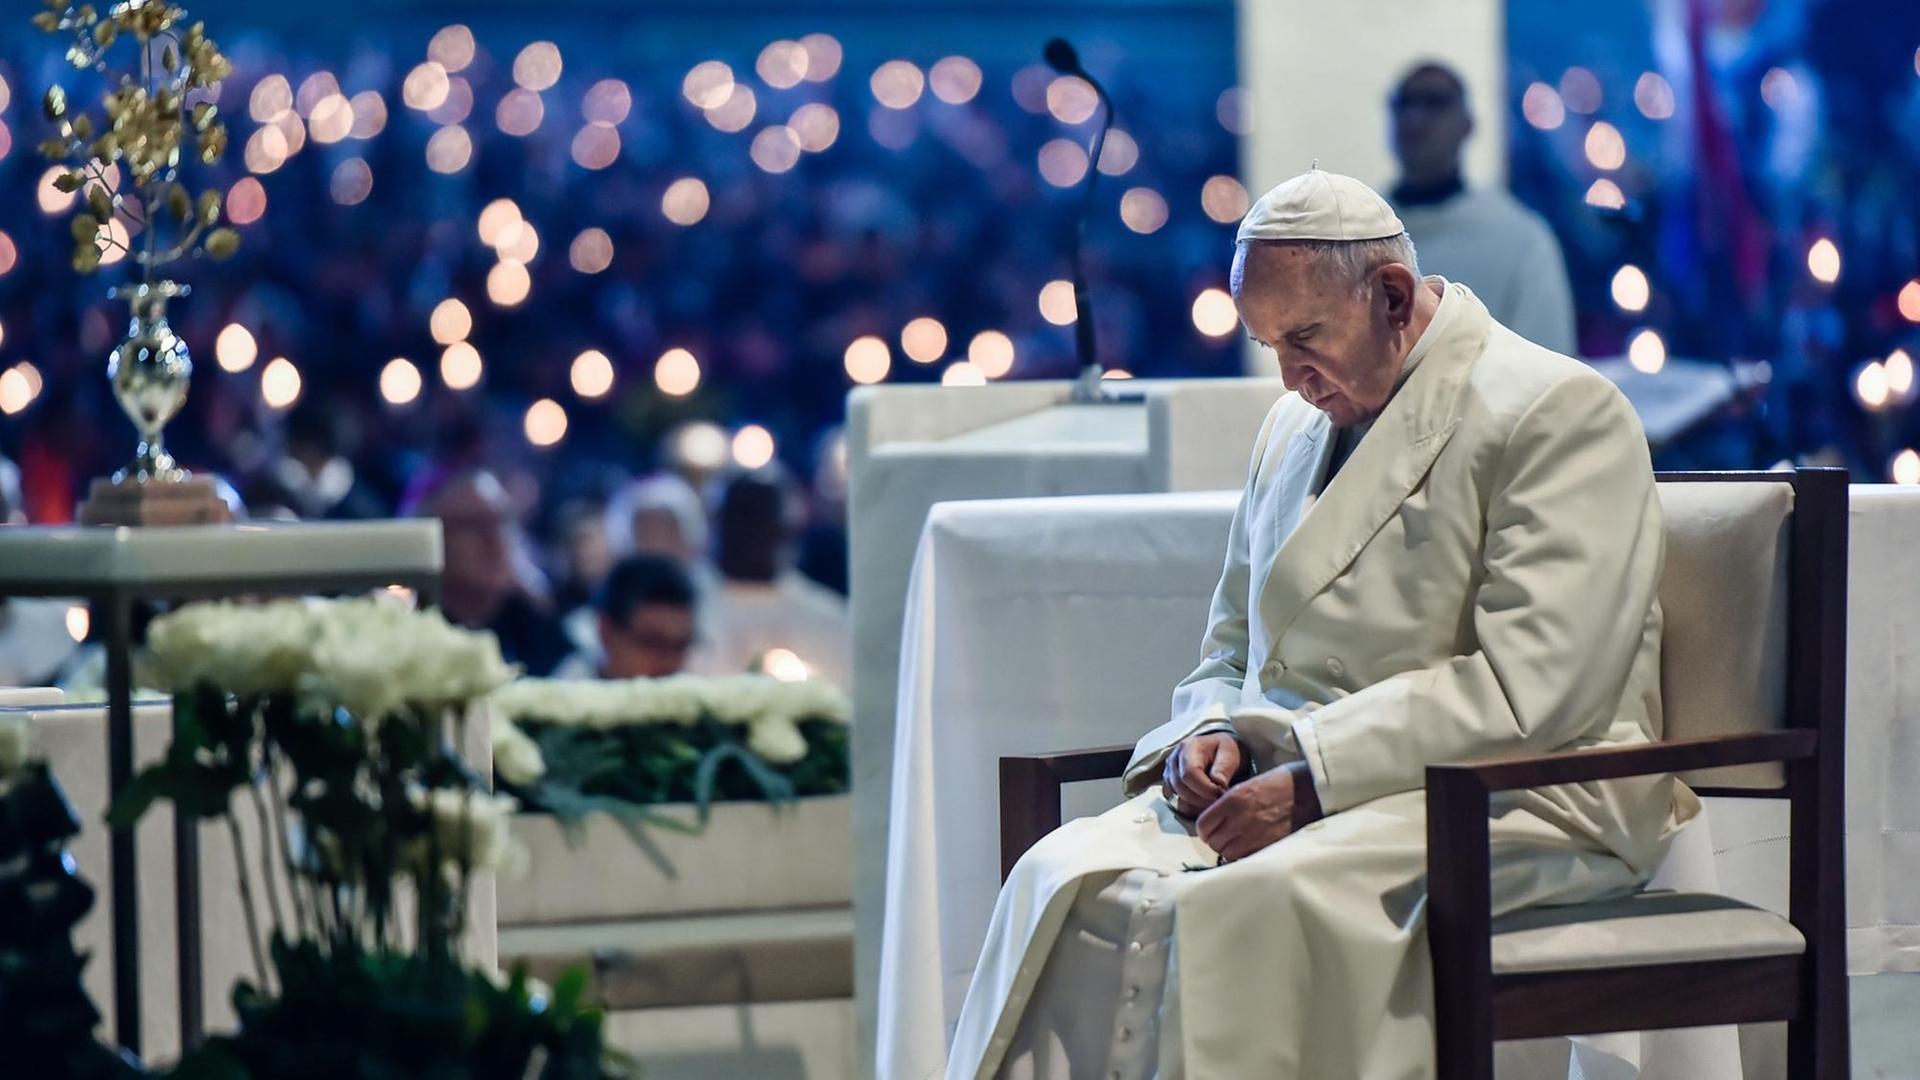 Papst Franziskus beim Gebet während der Nachtwache in der Kapelle von Fatima/Portugal am 12. Mai 2017. Zwei der drei Hirtenkinder, denen die Jungfrau Maria vor 100 Jahren erschienen war, werden am 13. Mai 2017 heiliggesprochen.